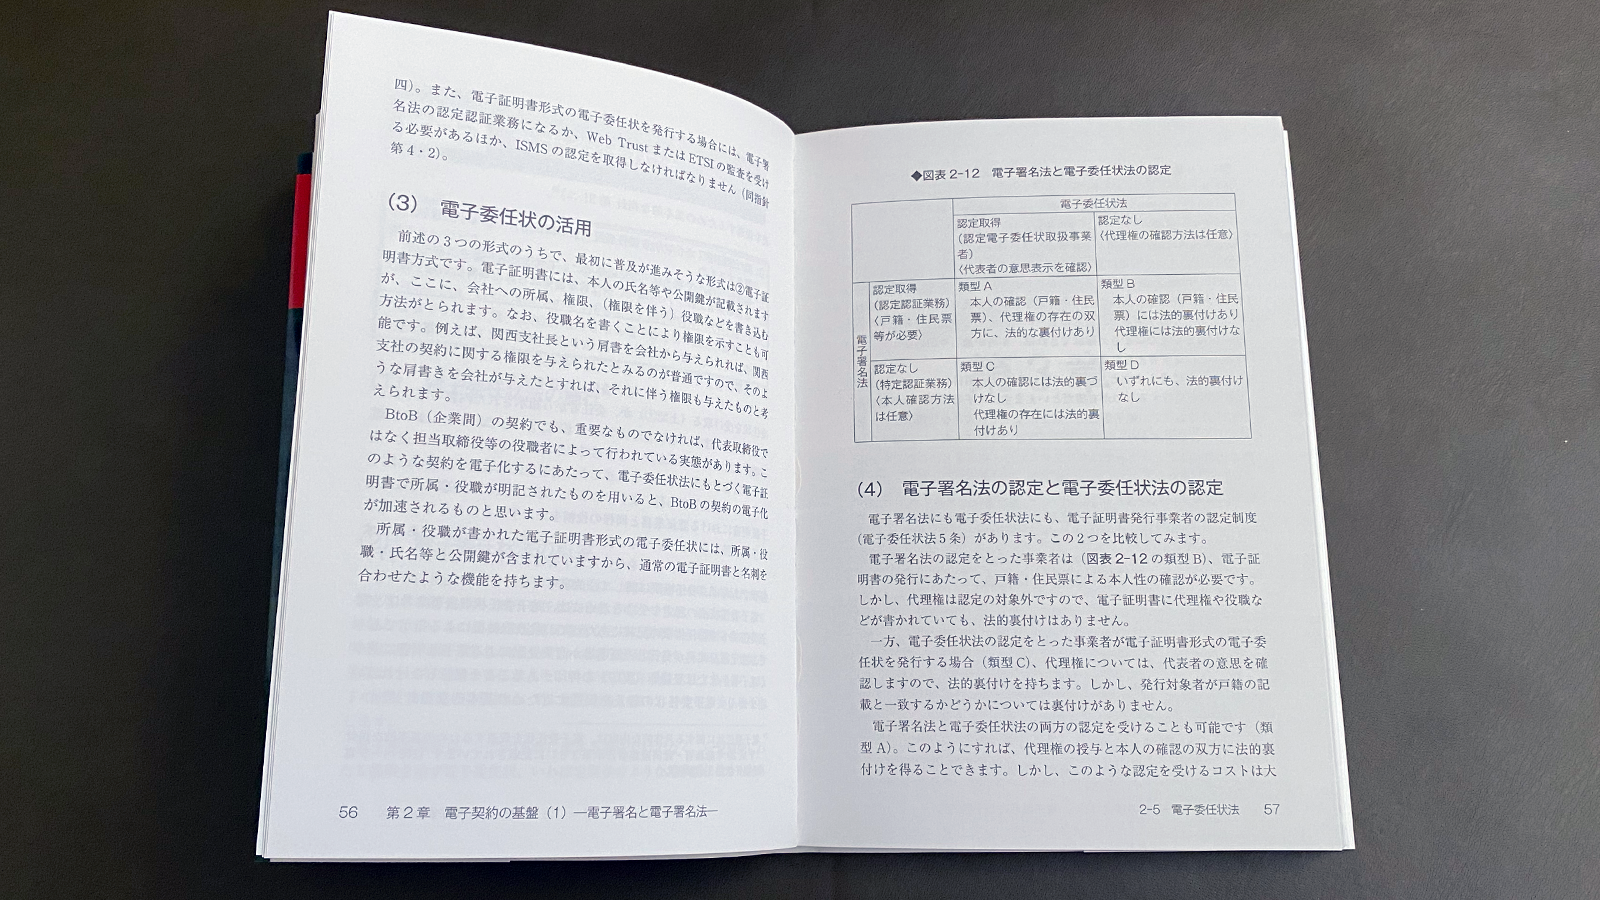 宮内宏『電子契約の教科書』P56-57